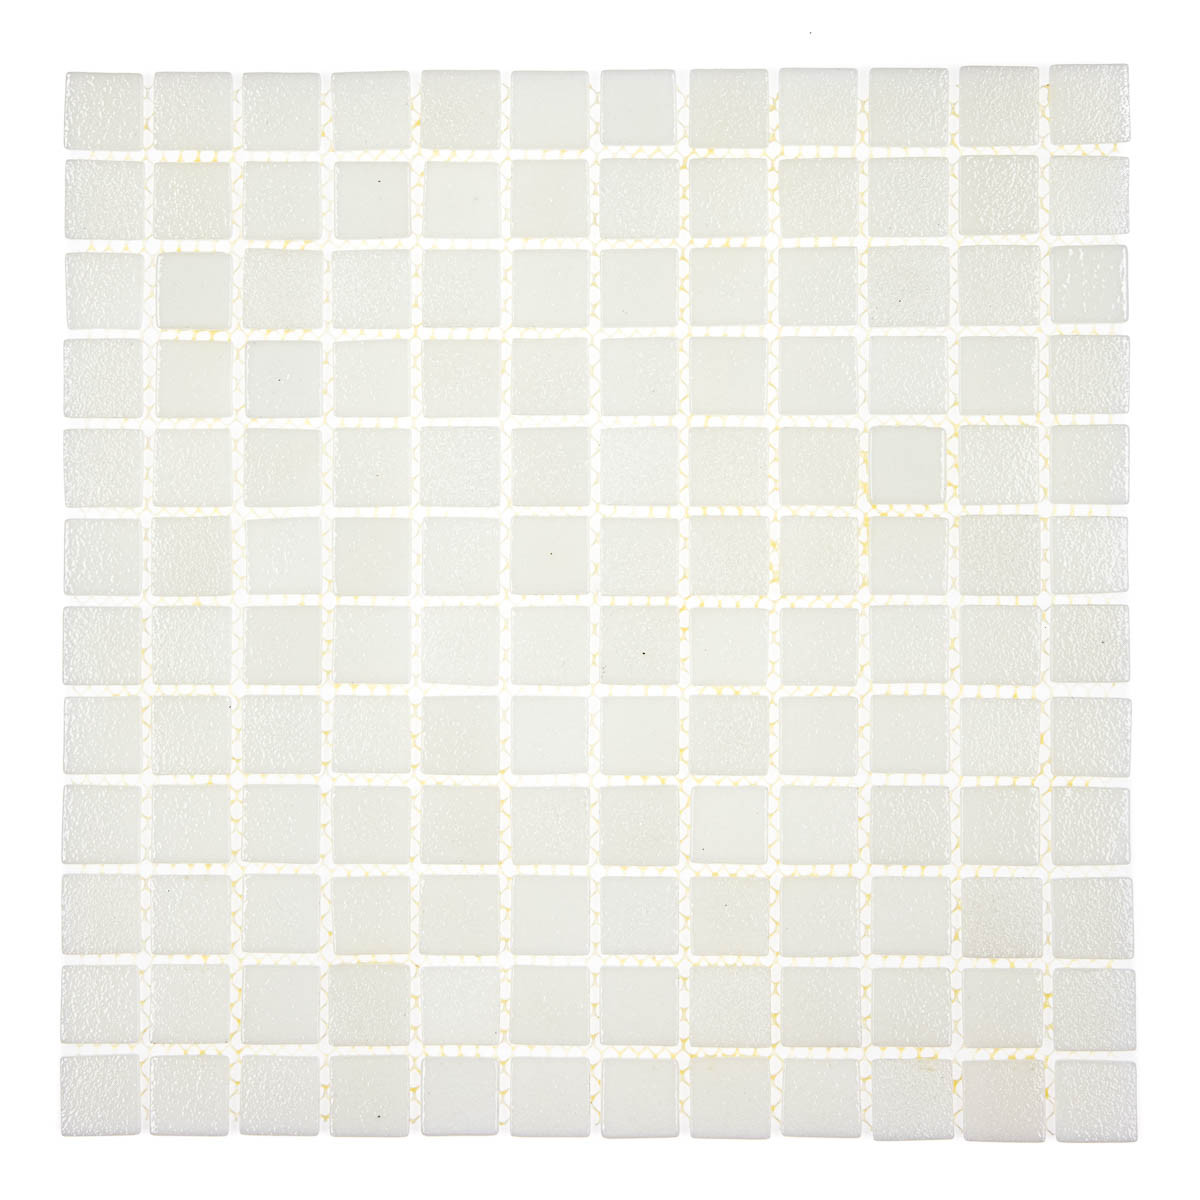 Мозаїка АкваМо White Coral 31.7х31.7 скляна для ванни, душової, кухні, хамама, басейну за 1 ШТ